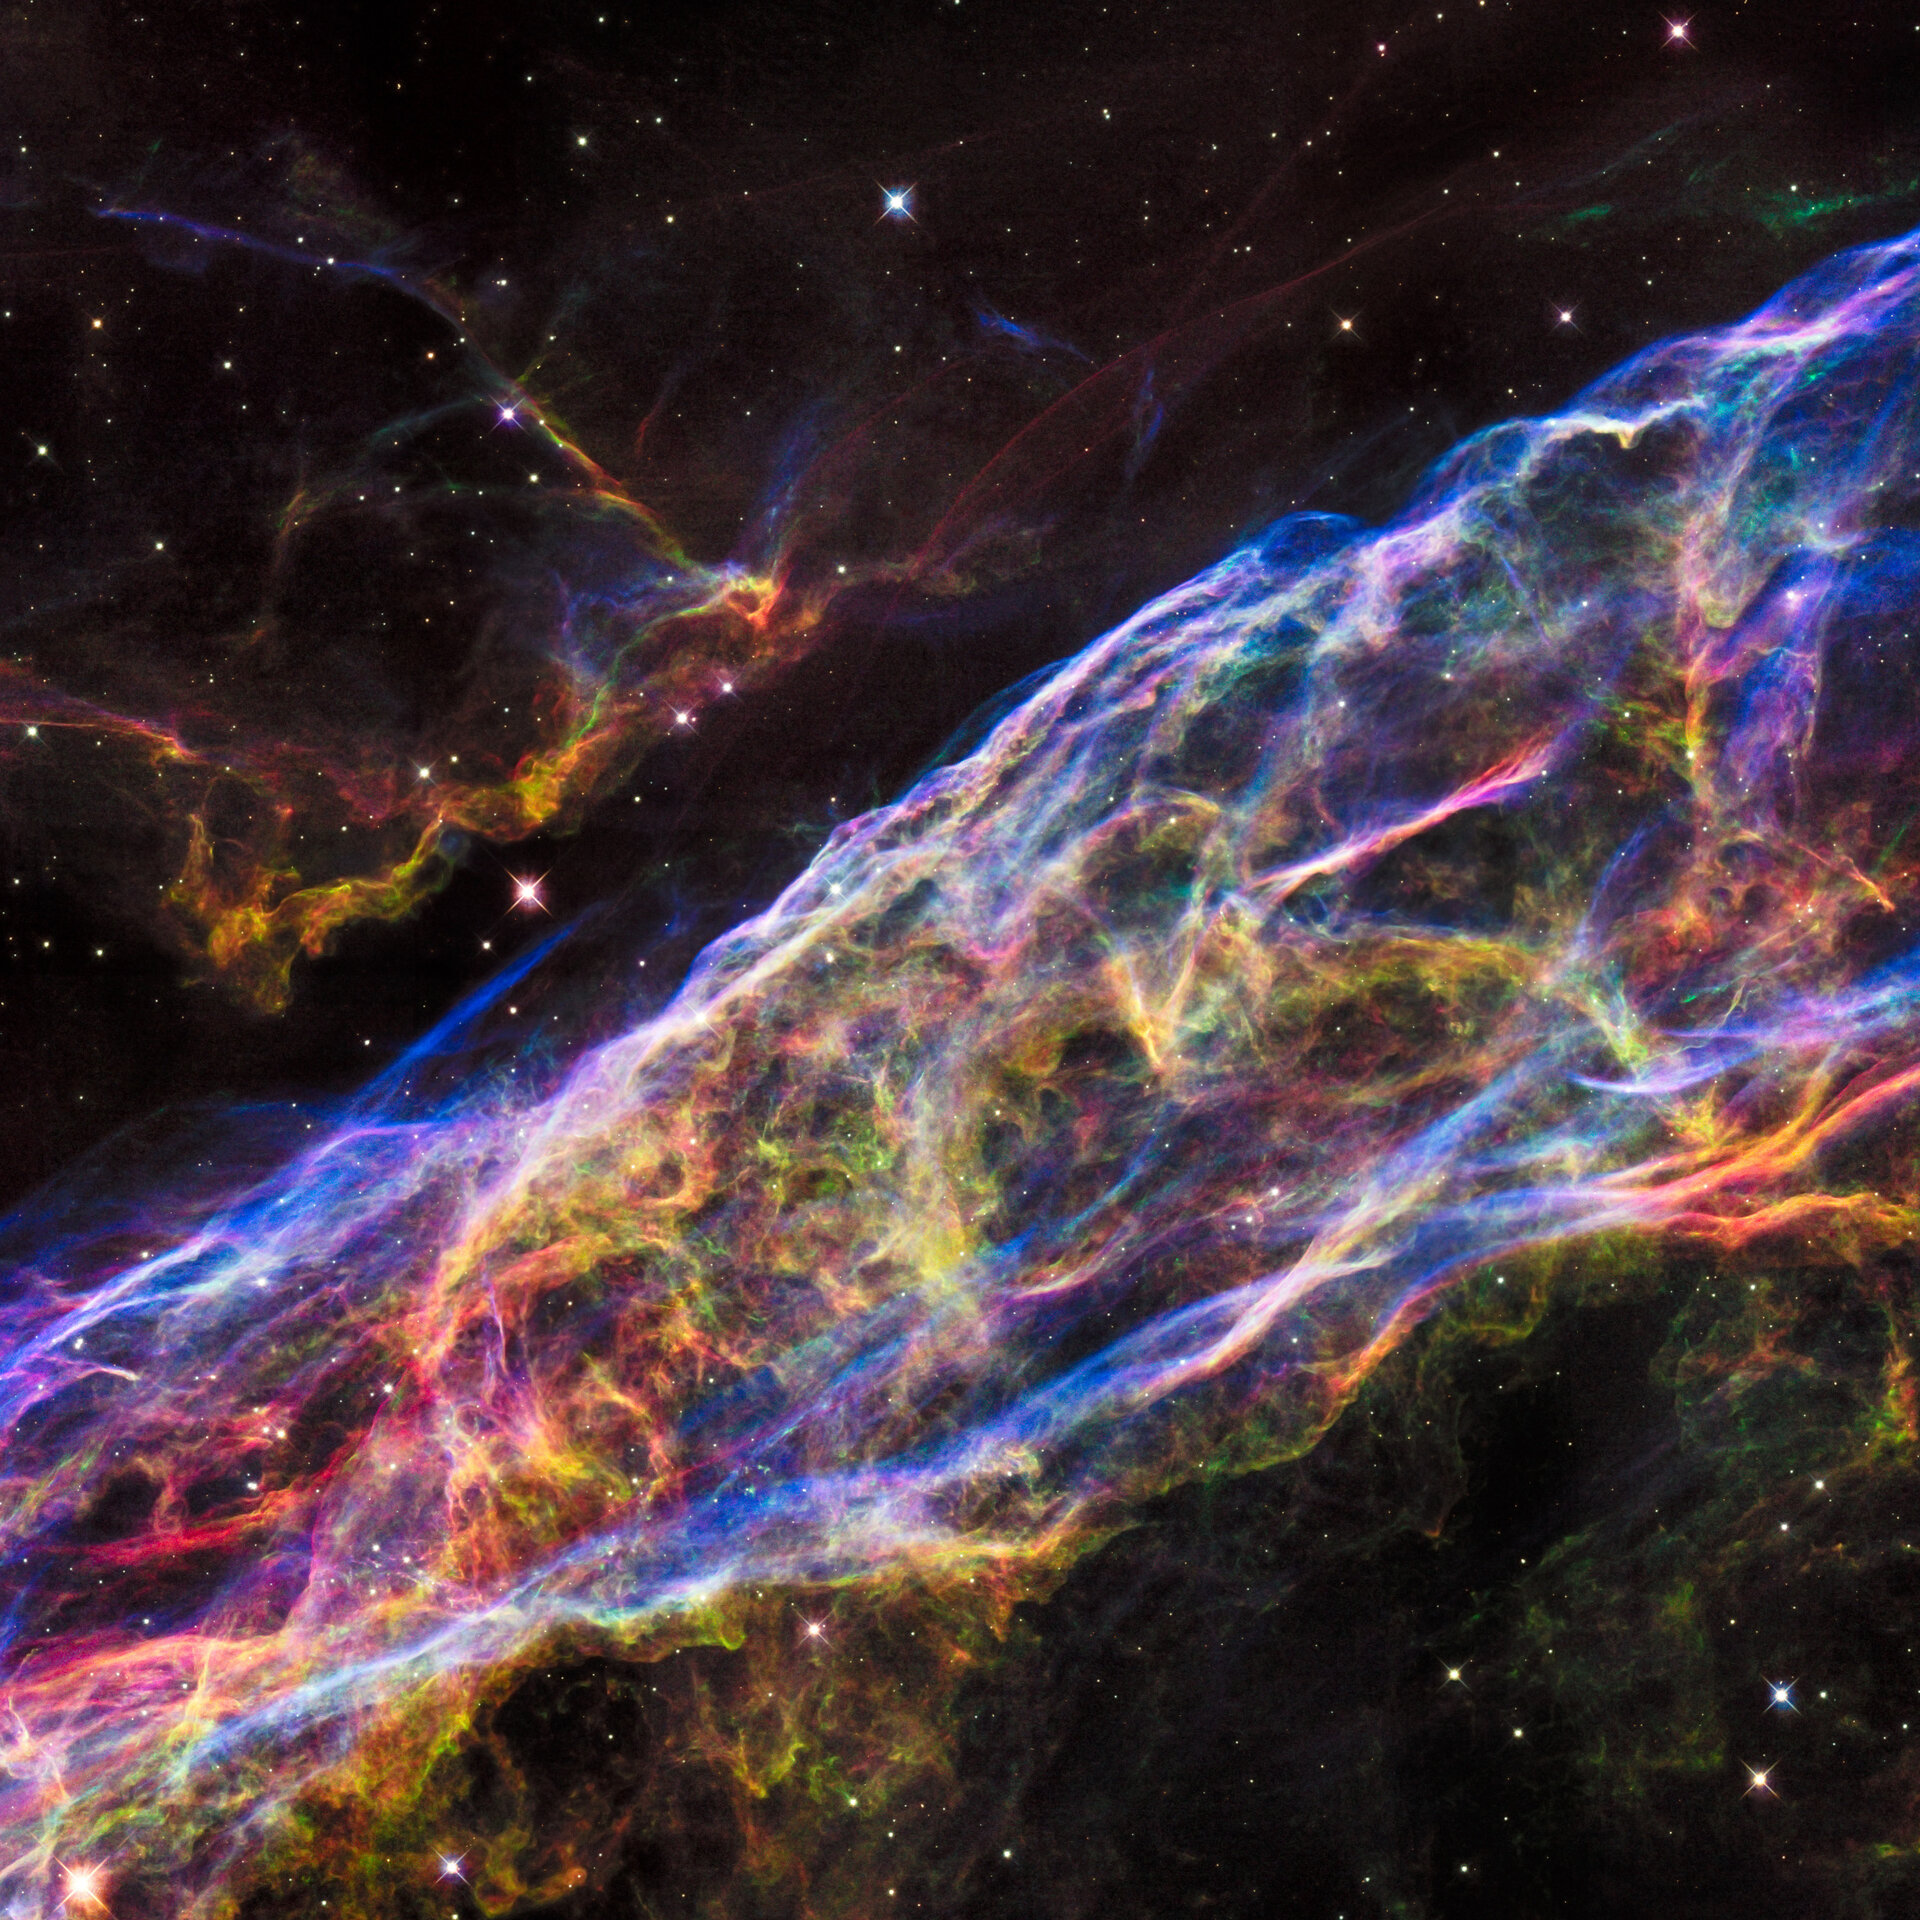 Veil Nebula section